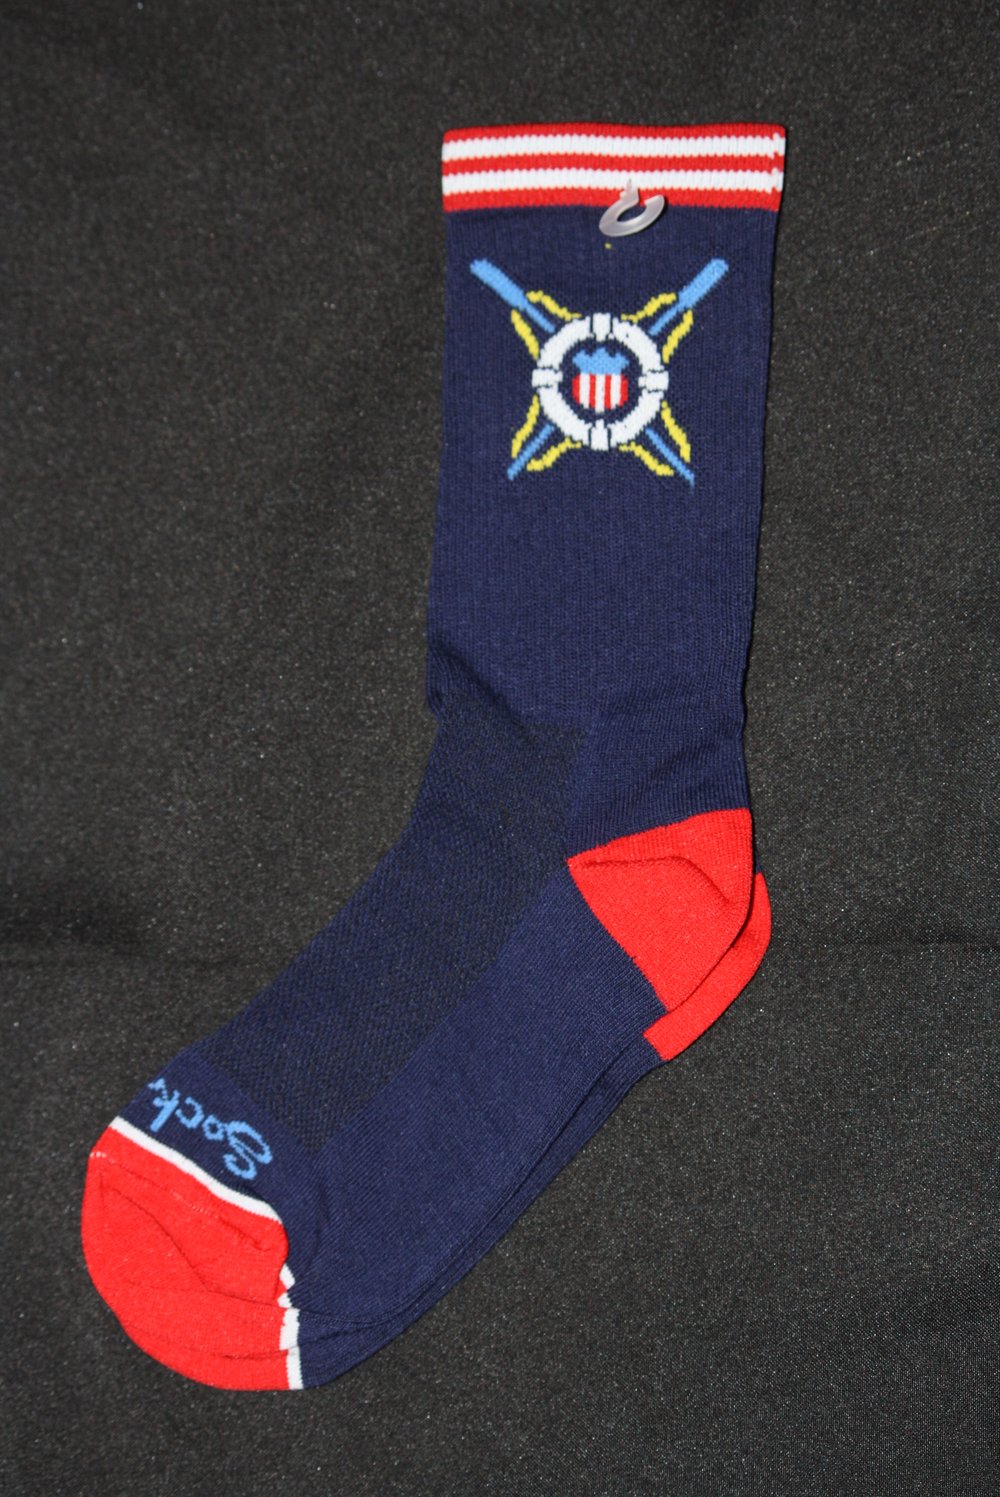 USLA Socks - limited quantity